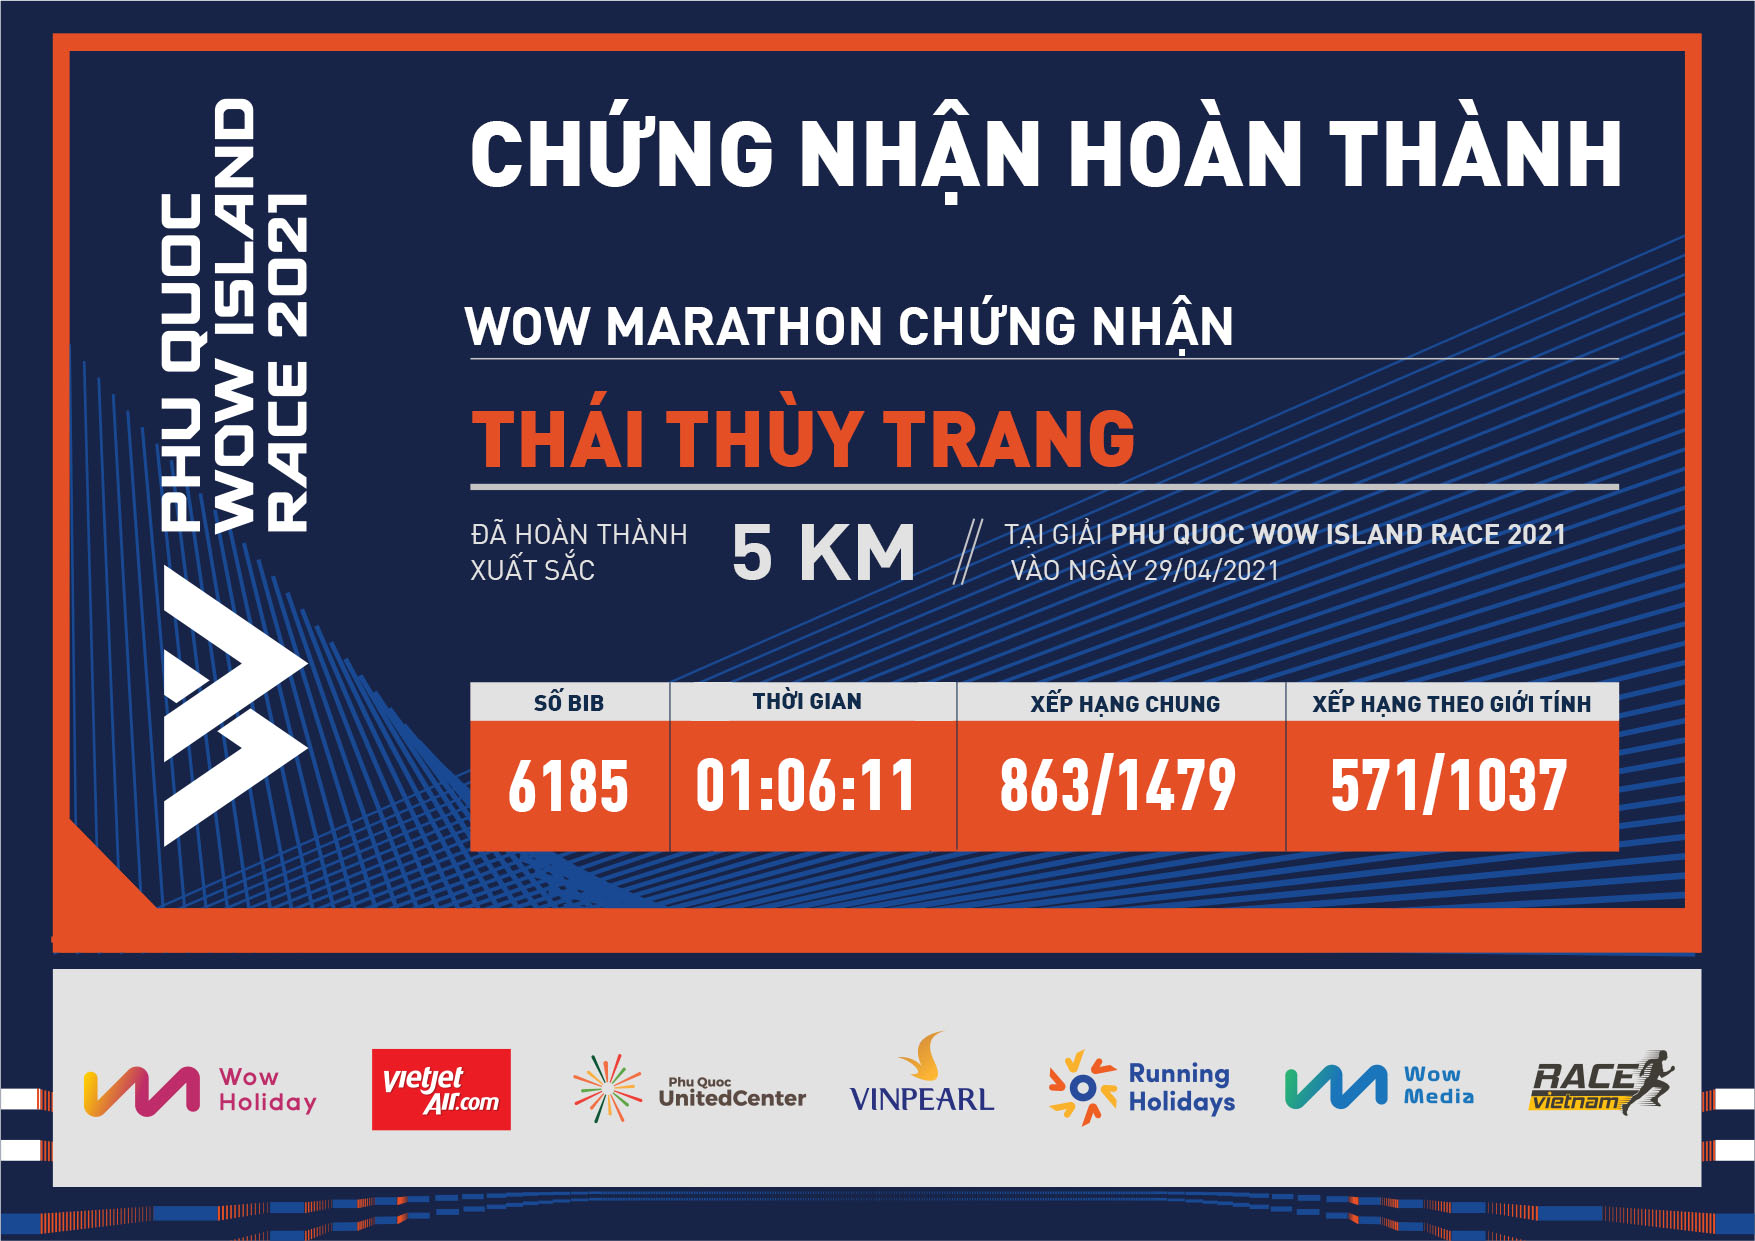 6185 - Thái Thùy Trang